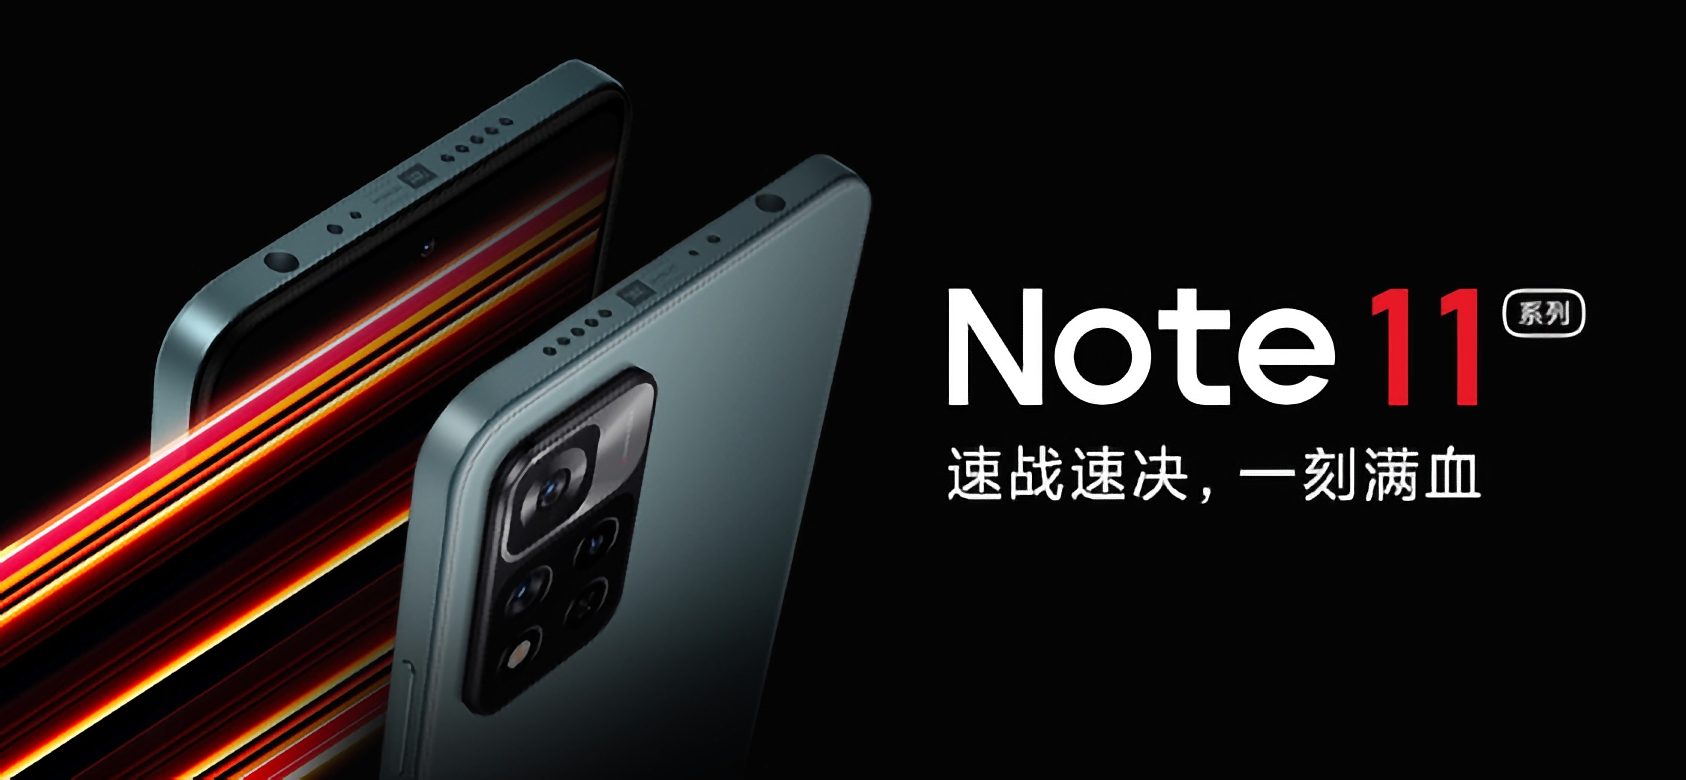 Redmi Note 11 wird Dimensity 810, 50MP Kamera und wird von 190 $ kosten